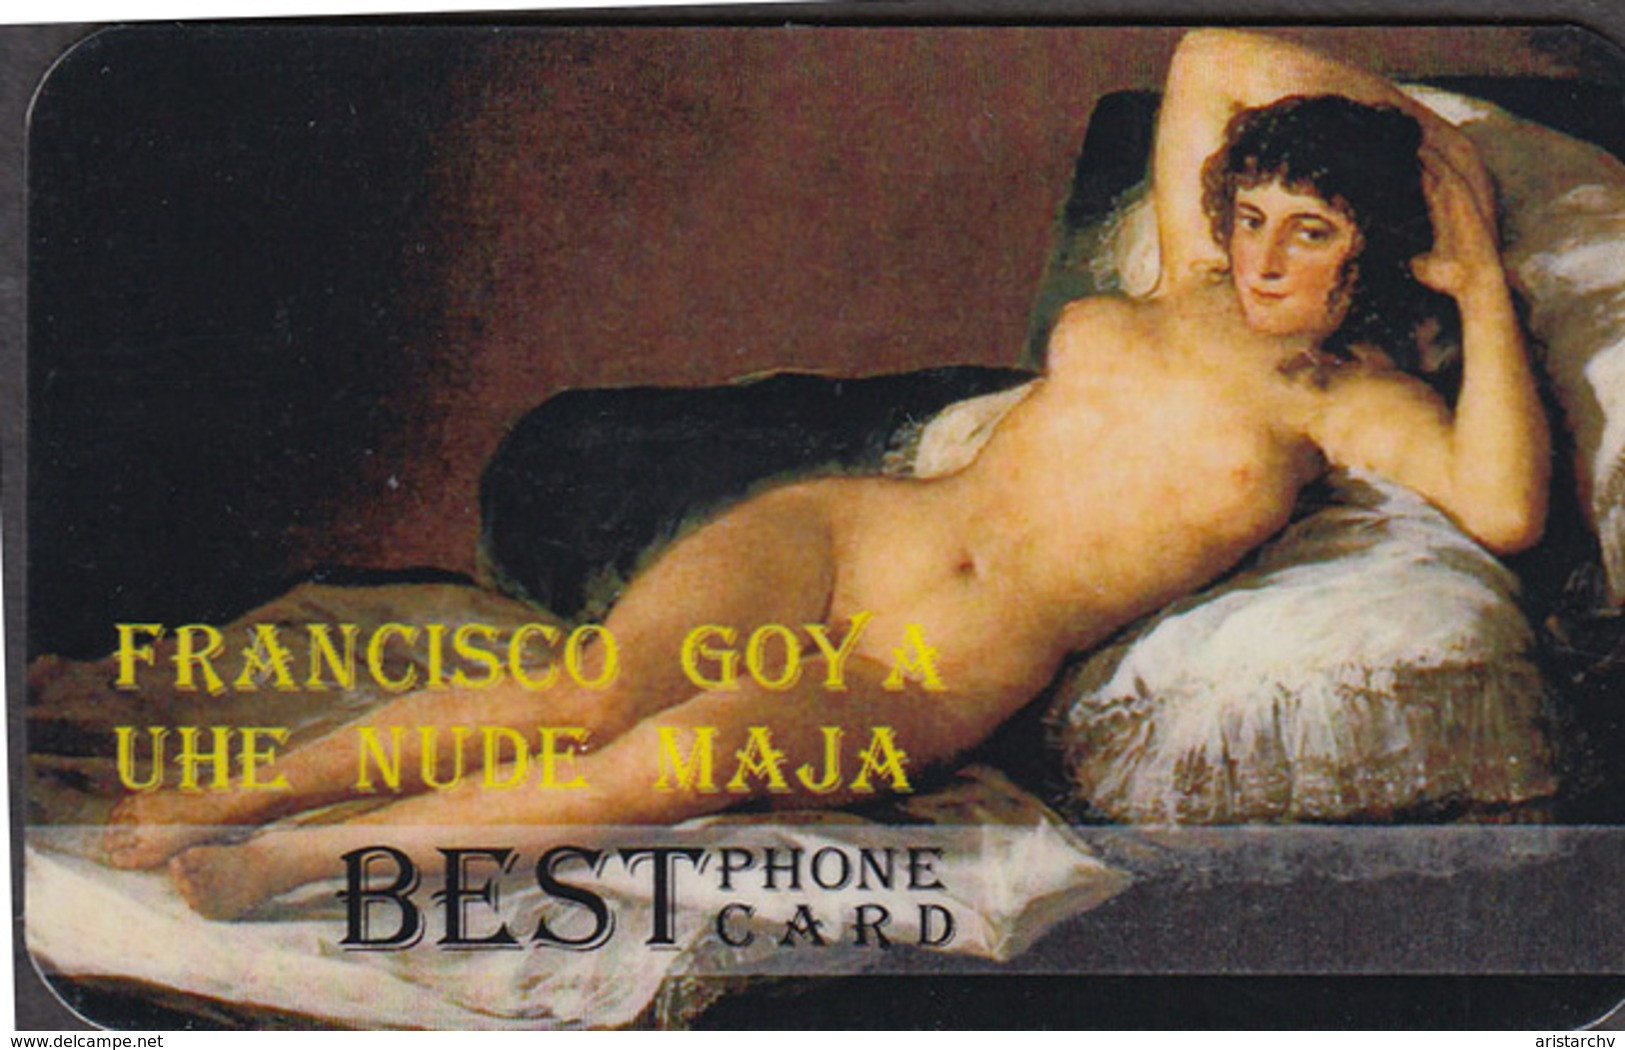 ART FRANCISCO GOYA SET OF 4 PHONE CARDS - Painting